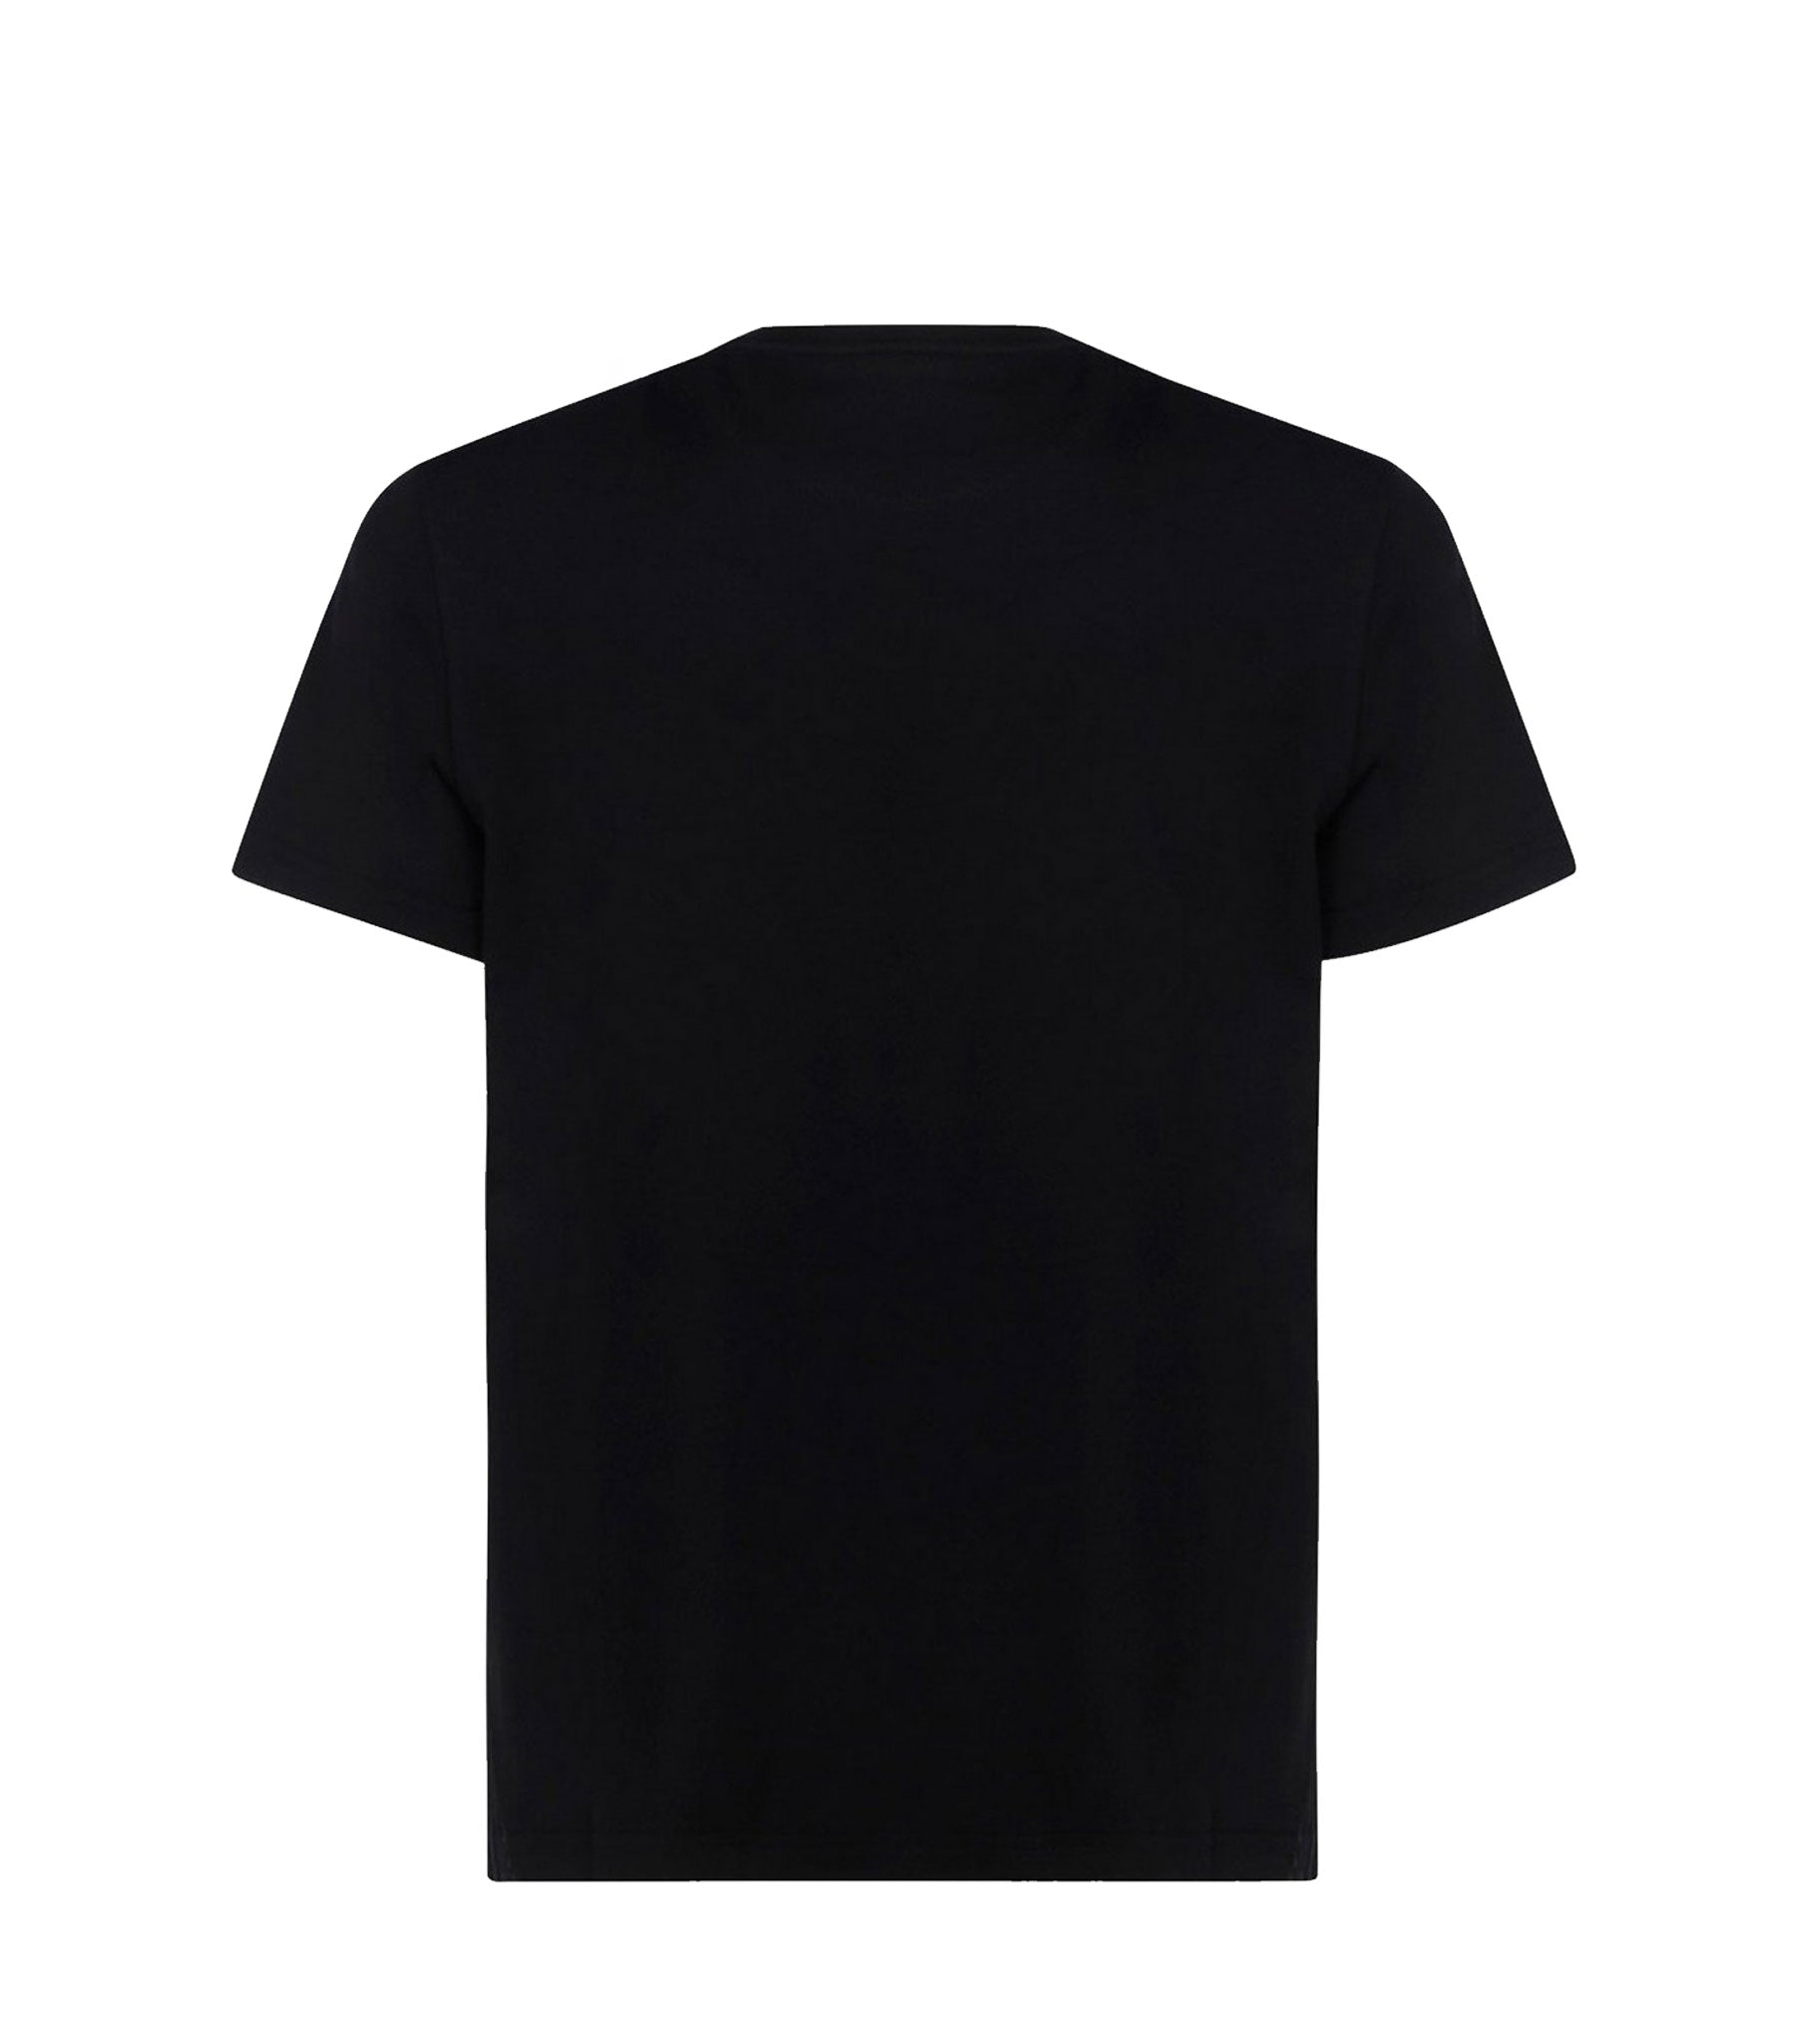 Black Cotton Unisex T-shirt